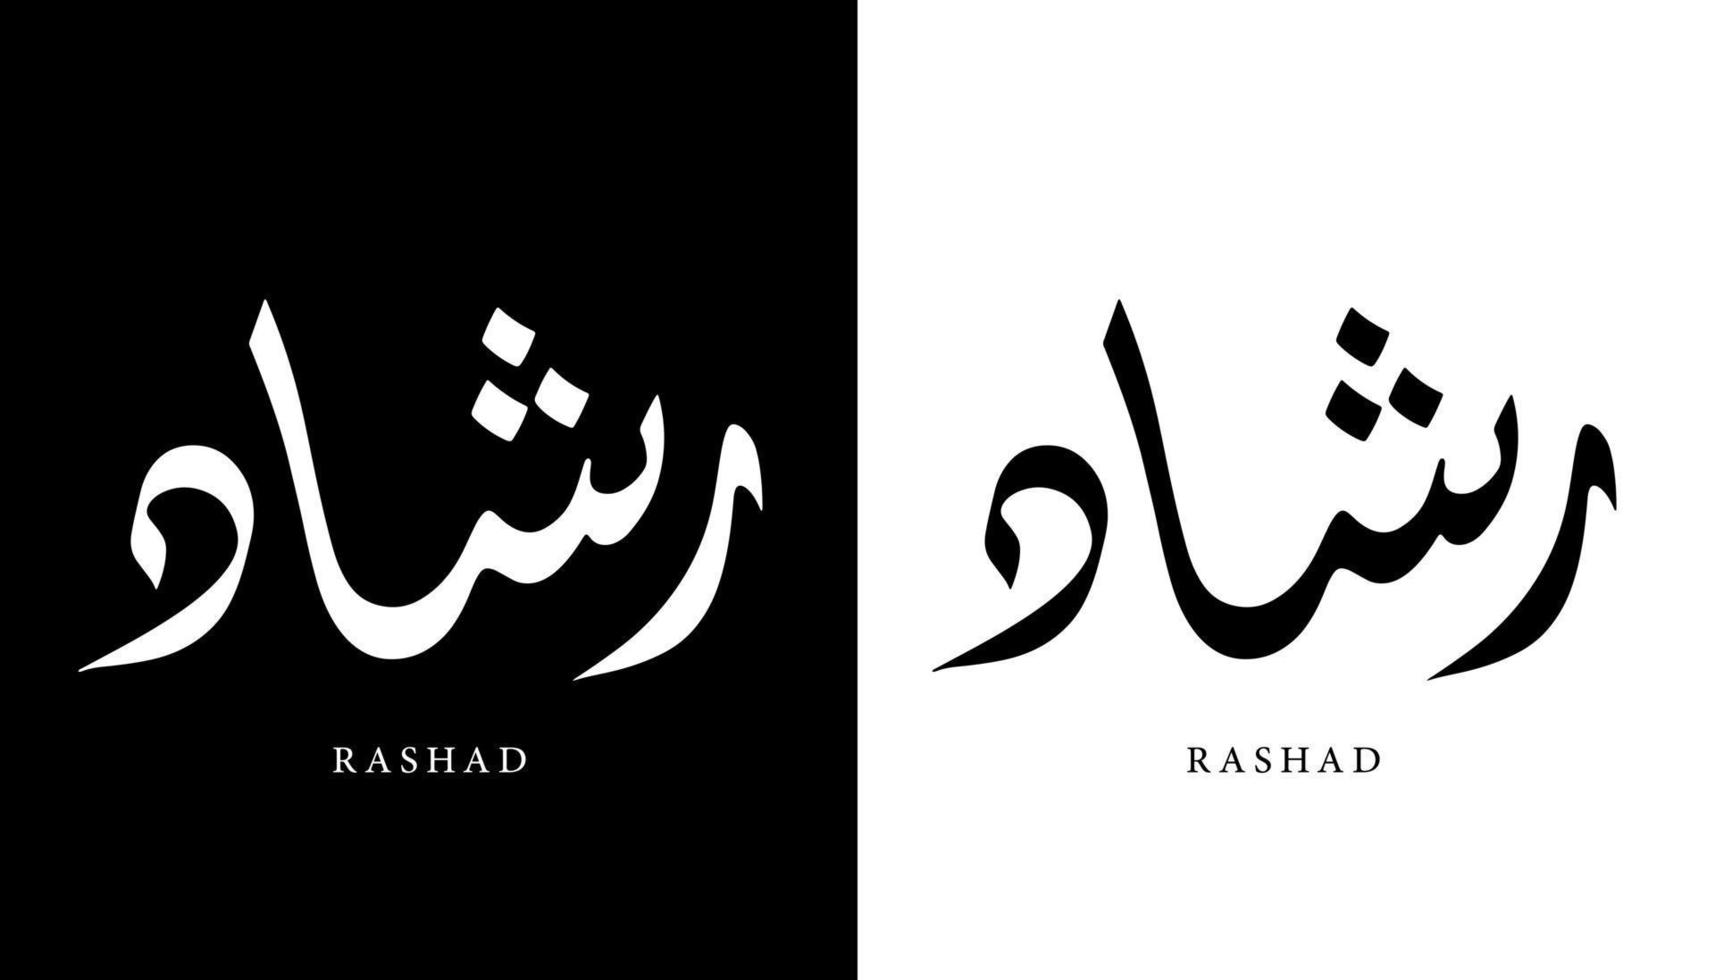 nome della calligrafia araba tradotto 'rashad' lettere arabe alfabeto font lettering logo islamico illustrazione vettoriale